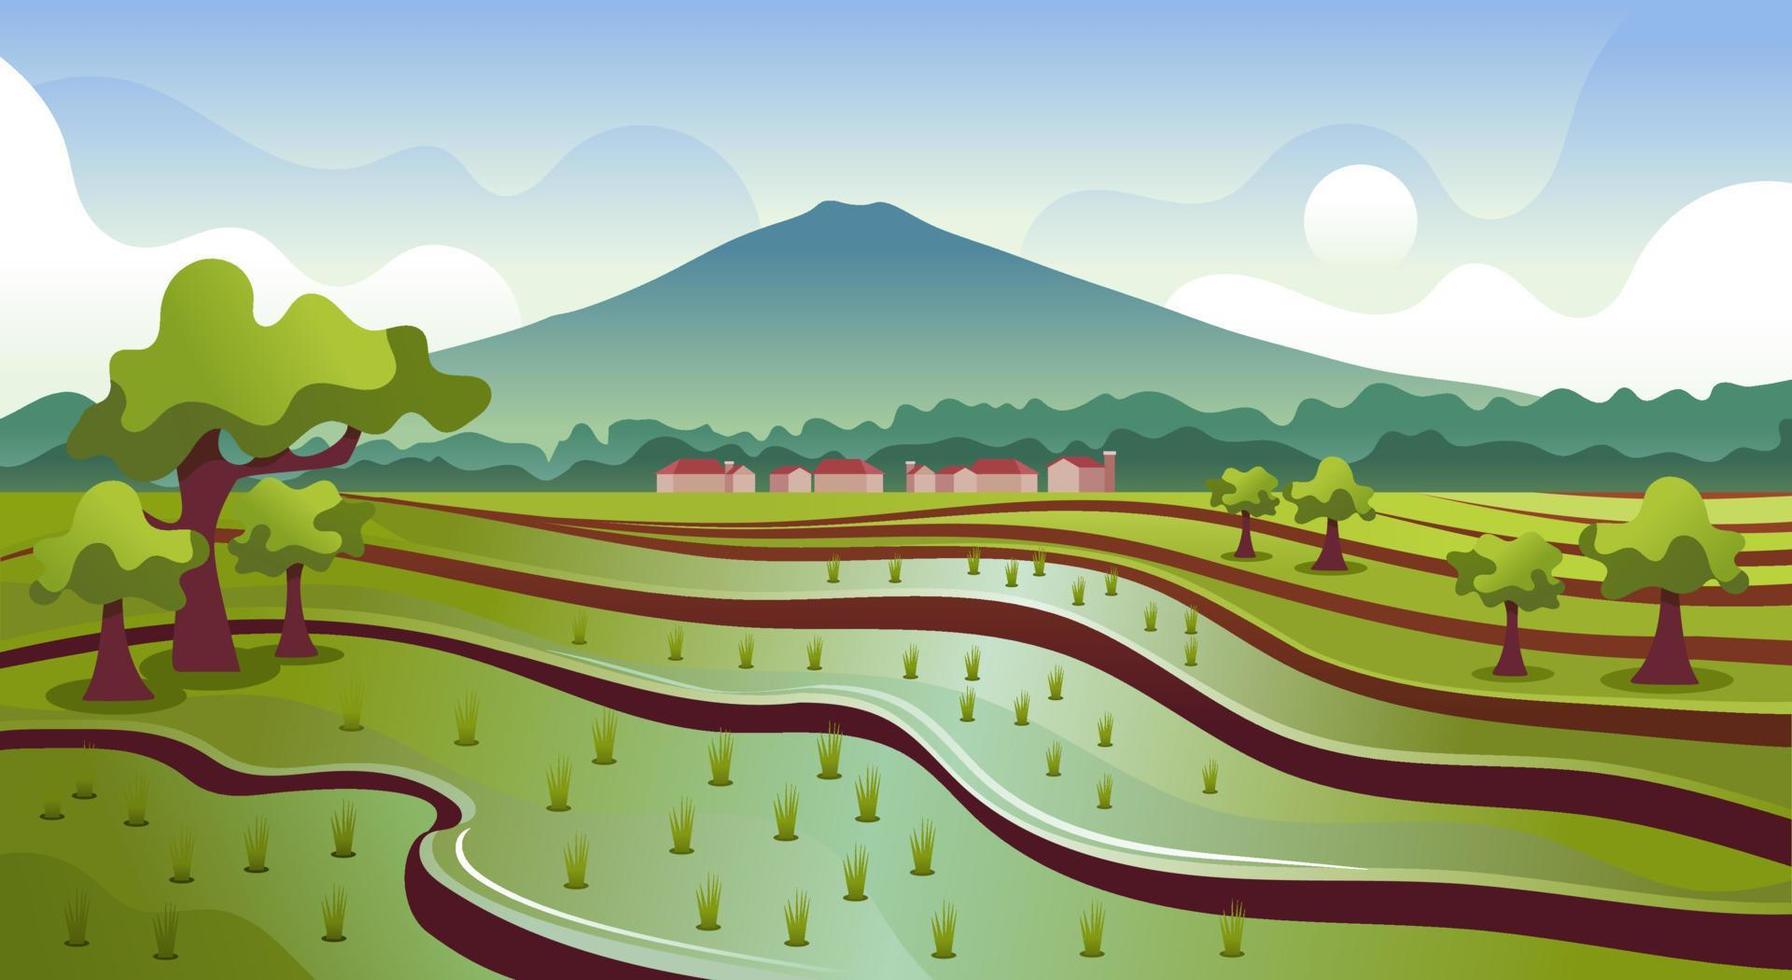 naturlig landskap av berg, ris fält och himmel landskap vektor